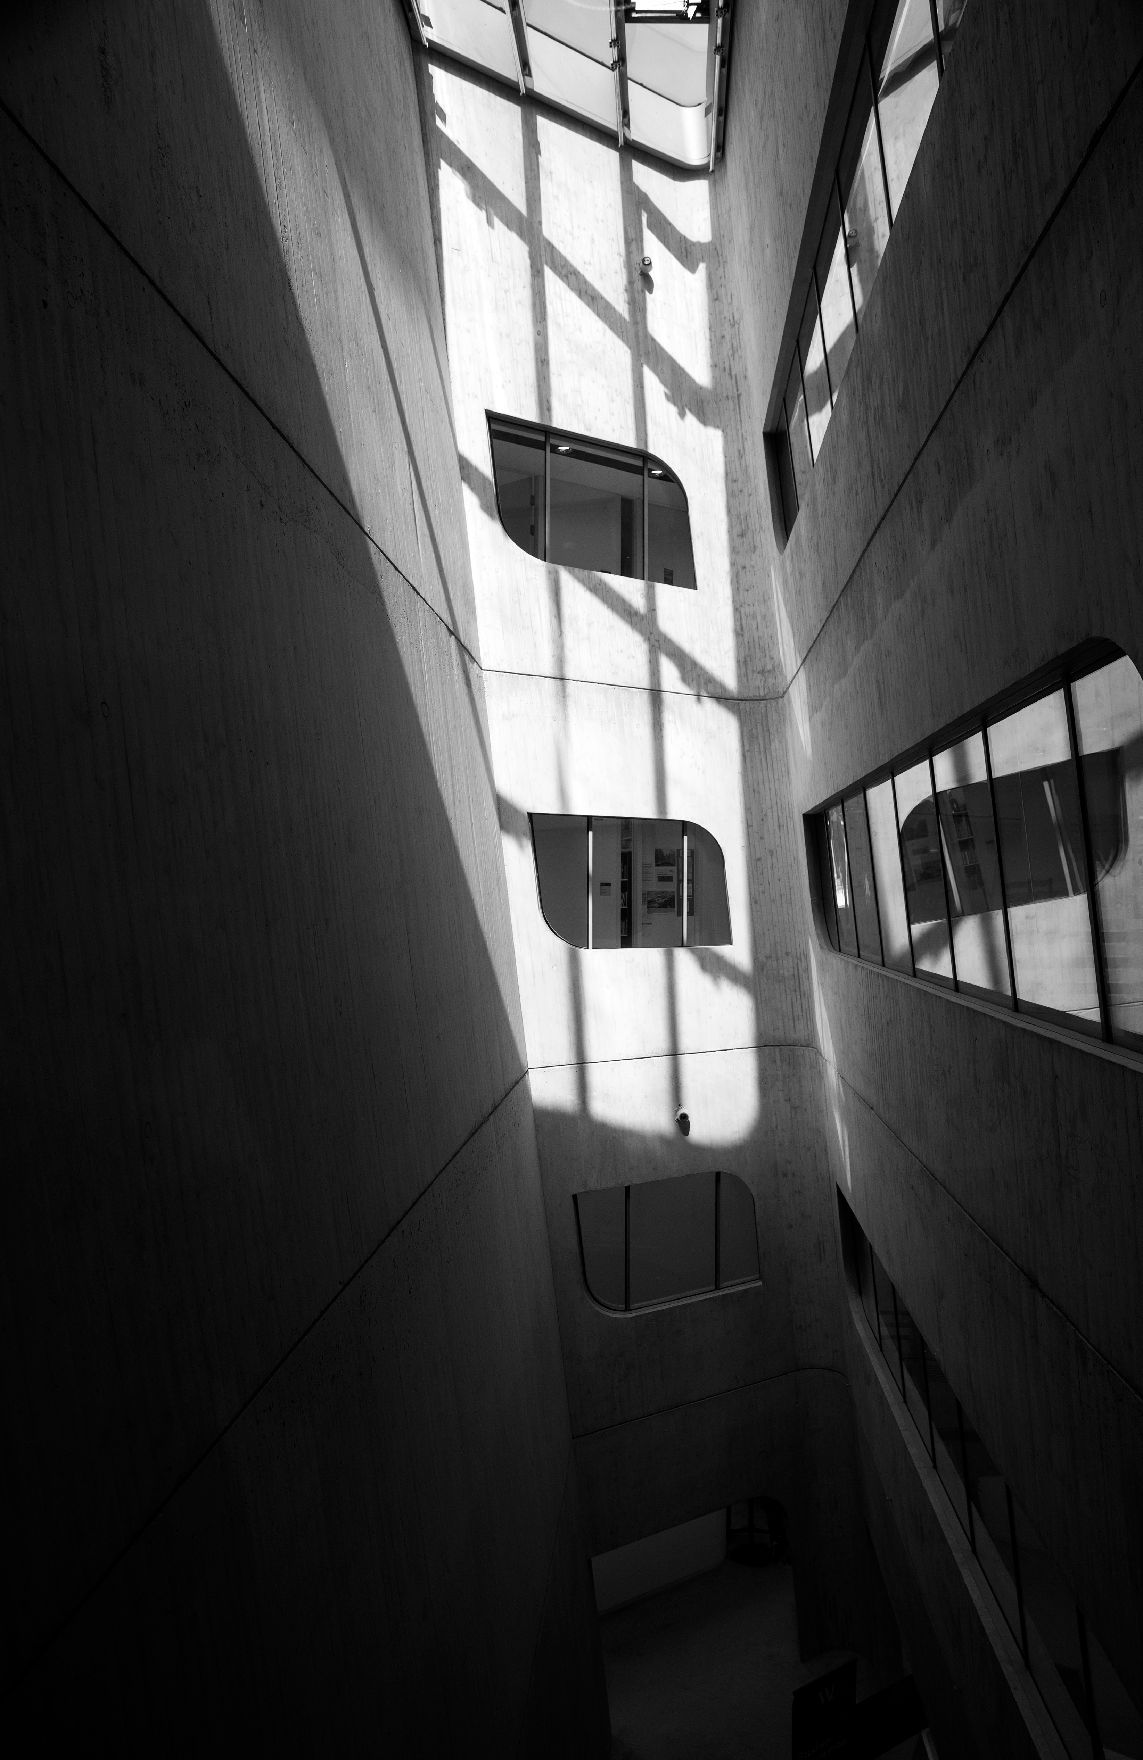 Wirtschaftsuniversität Wien Schlagworte: Architektur, Fenster, schwarz-weiß, Universität